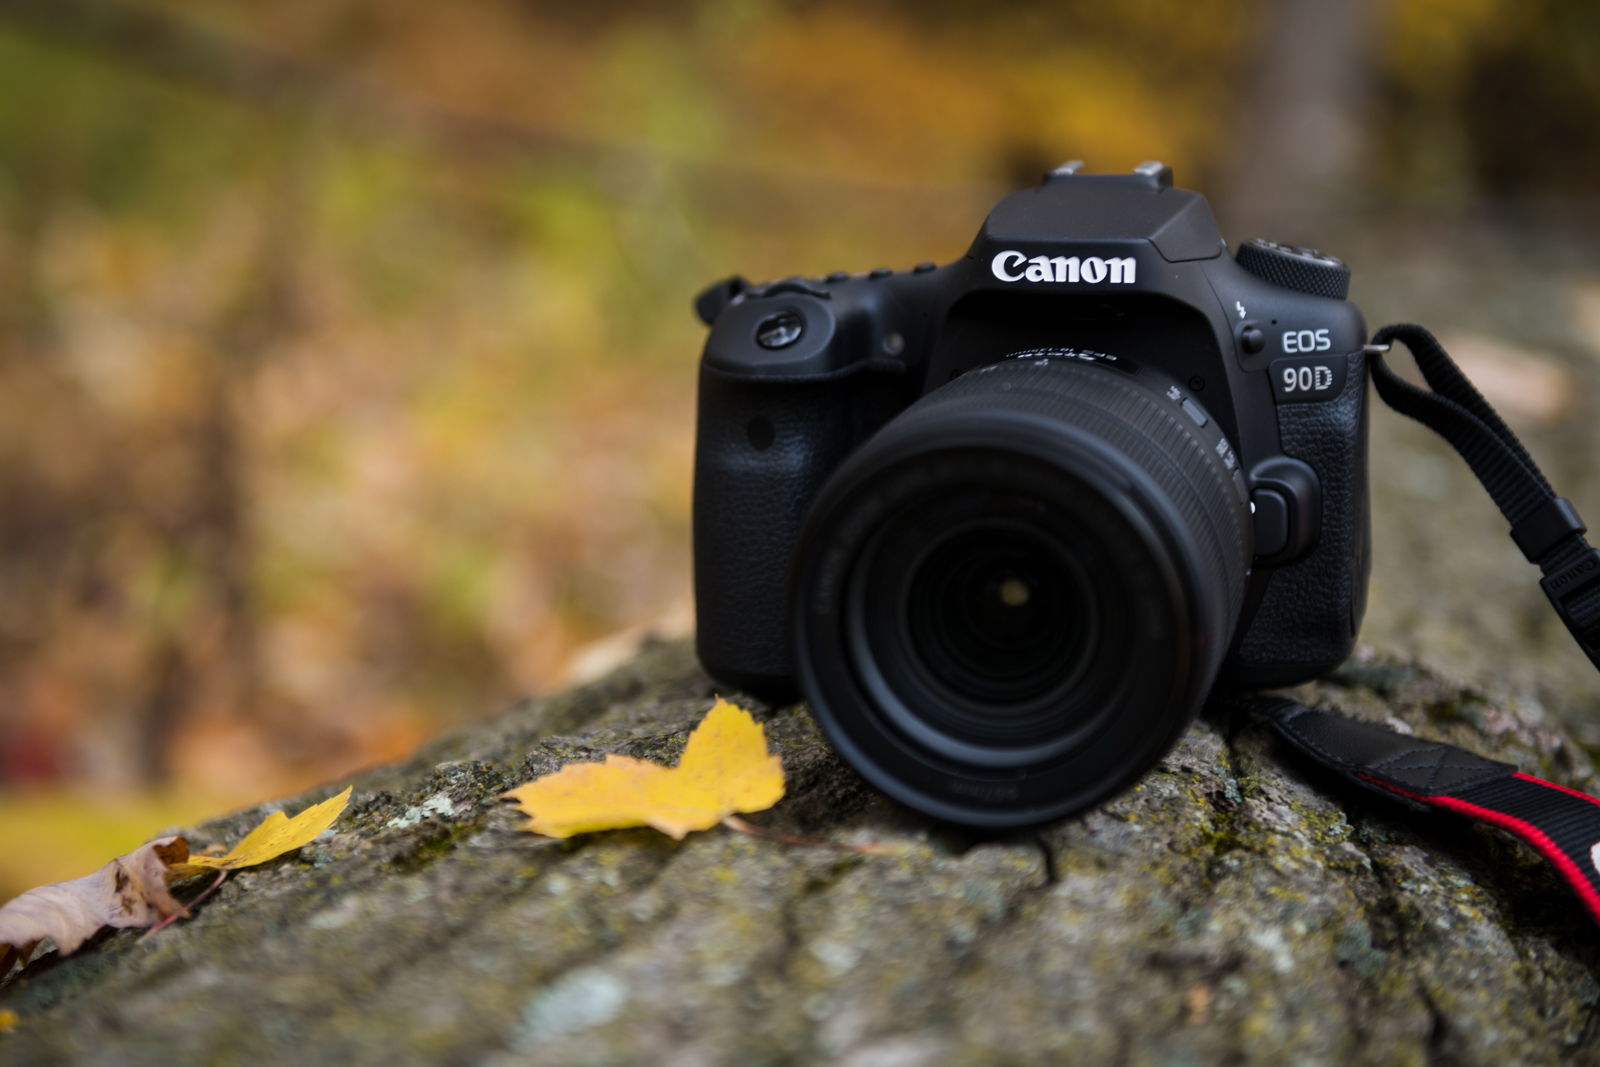 Canon EOS 90D: Hãy khám phá bức hình đầy chuyên nghiệp với chất lượng vượt trội nhờ Canon EOS 90D - một chiếc máy ảnh DSLR đa chức năng, chụp ảnh liên tục và quay phim 4K. Choáng ngợp bởi những chi tiết rõ nét và màu sắc sặc sỡ của bức hình khi sử dụng Canon EOS 90D.